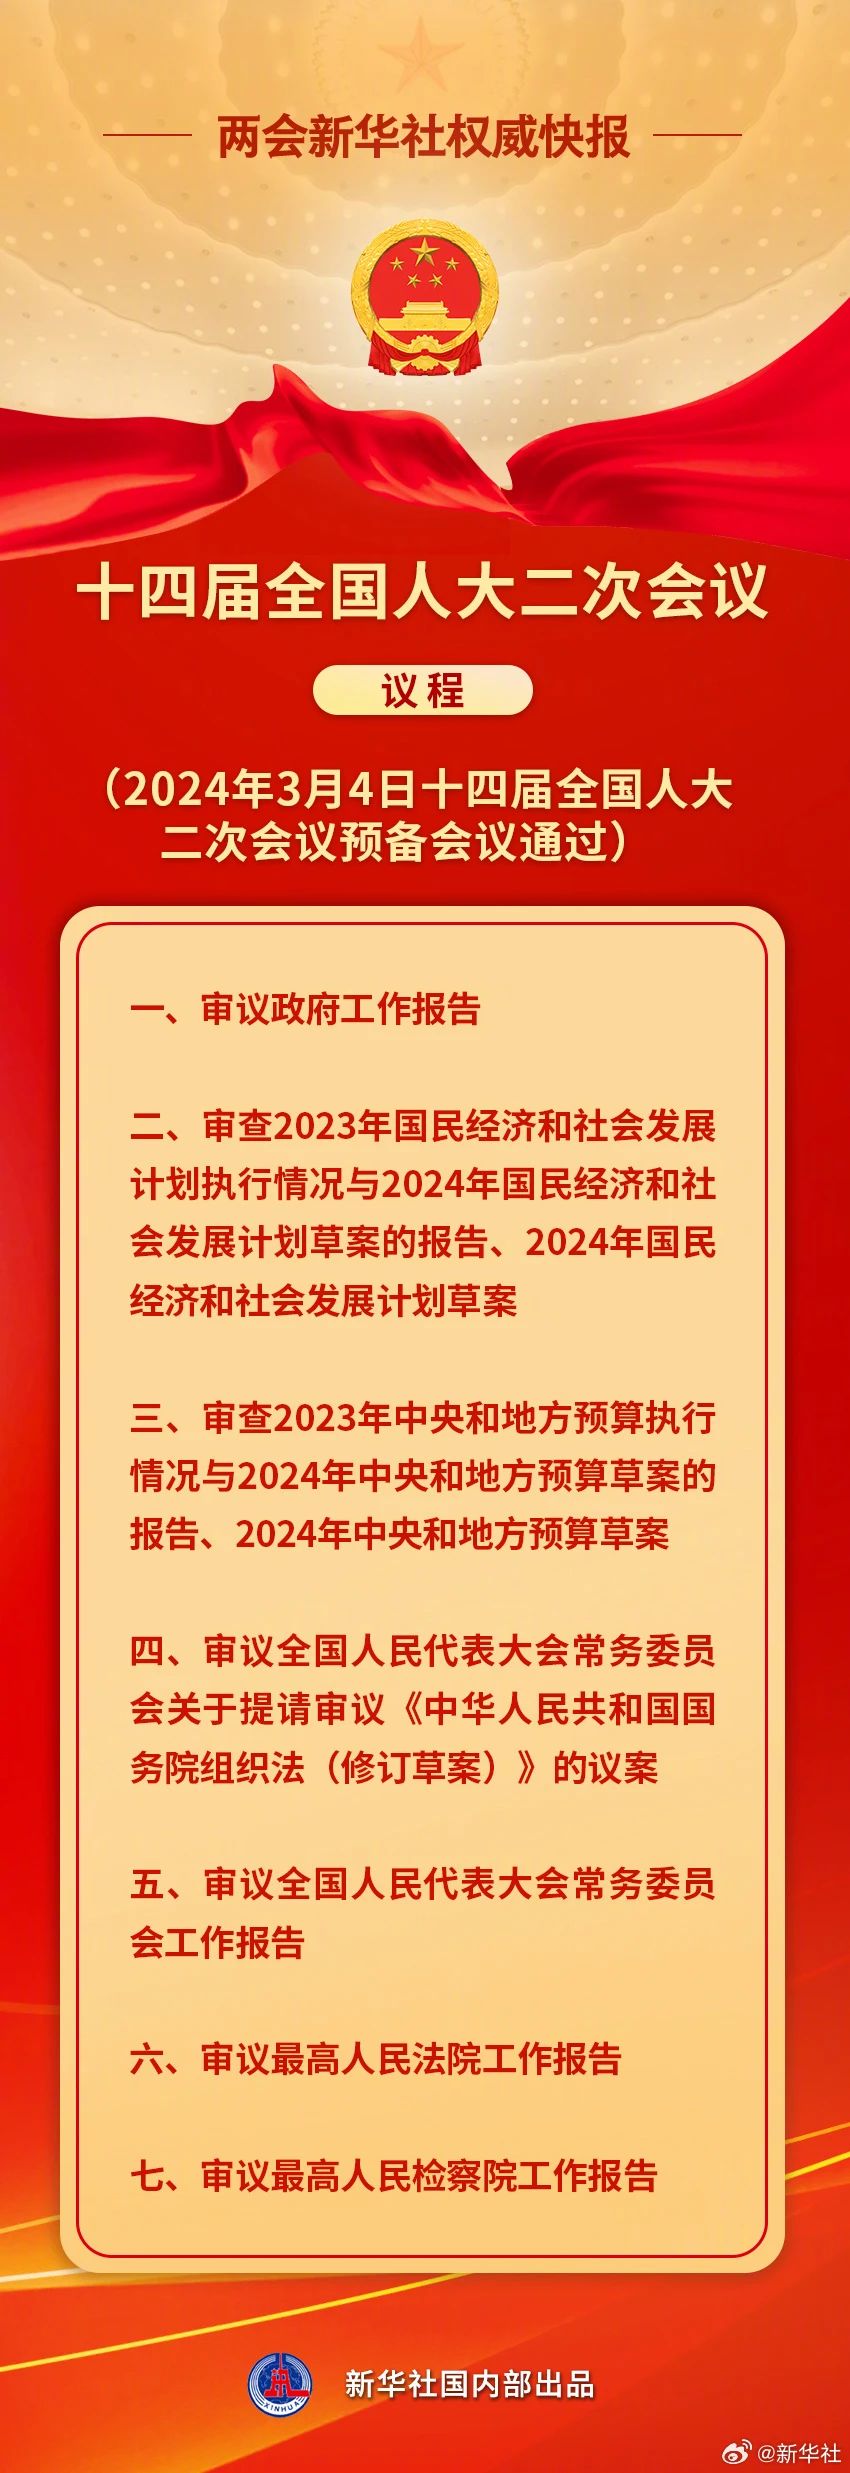 2023年12月19日，省人大常委会机关启动“初心书屋”。_副本.jpg